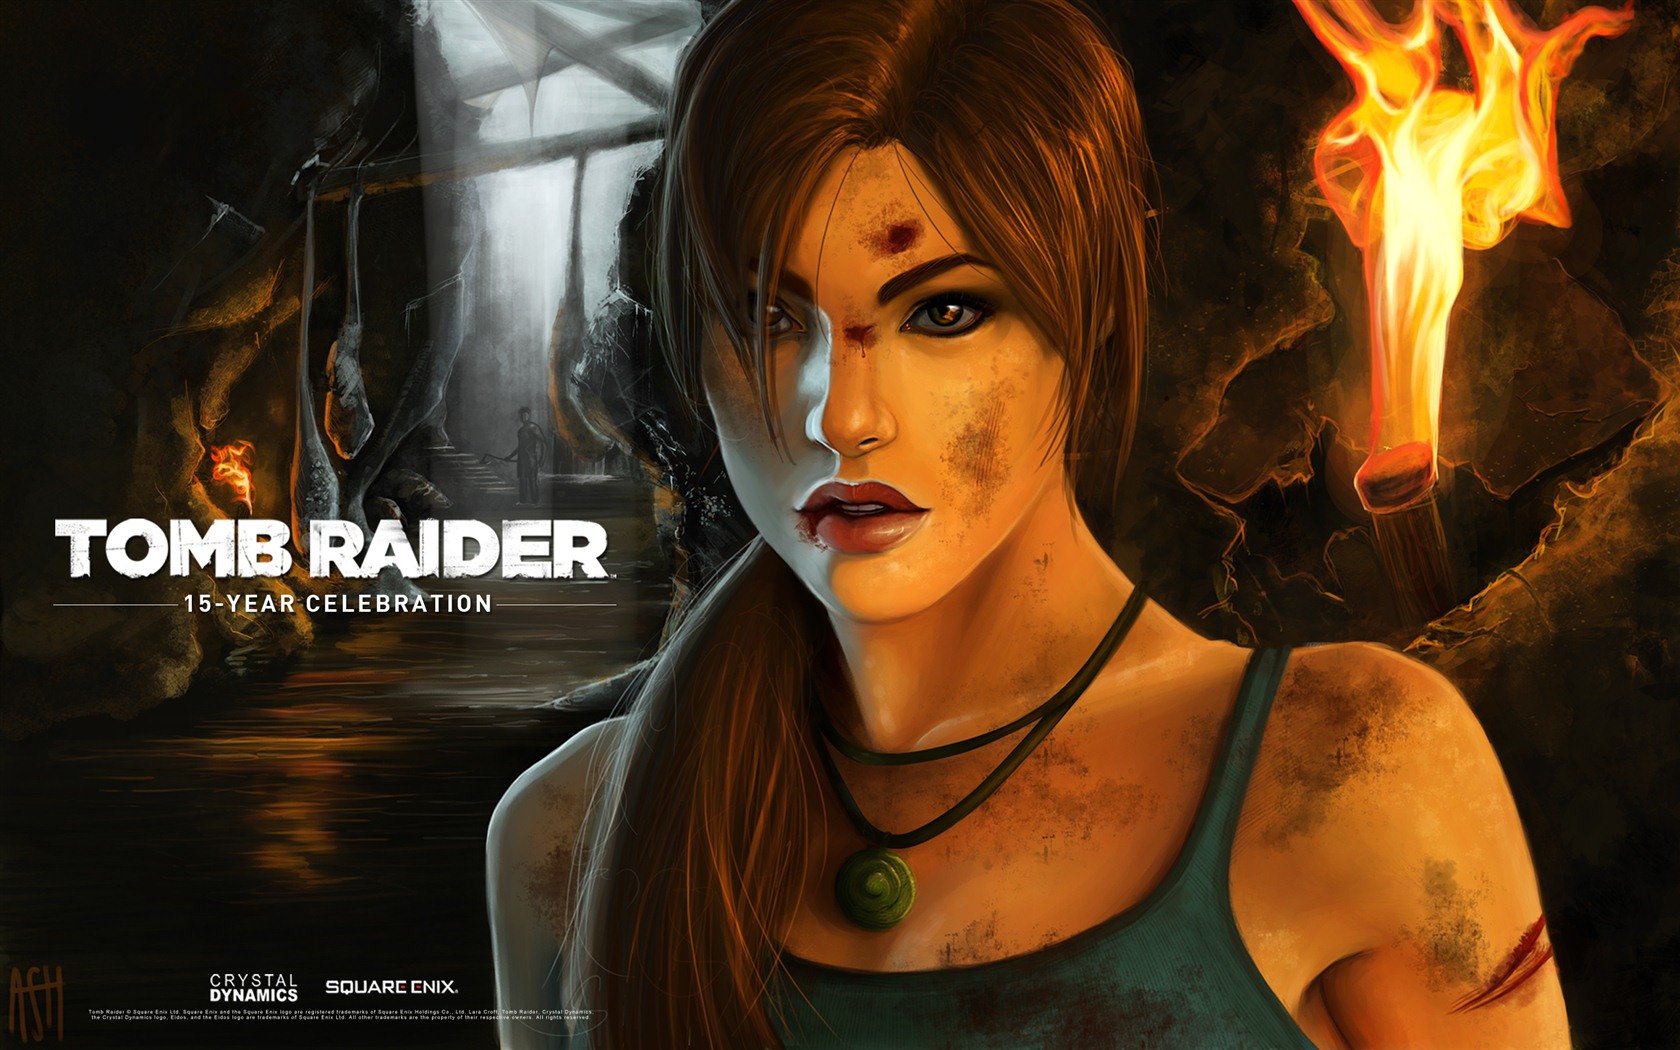 Tomb Raider 15-Year Celebration 古墓丽影15周年纪念版 高清壁纸7 - 1680x1050